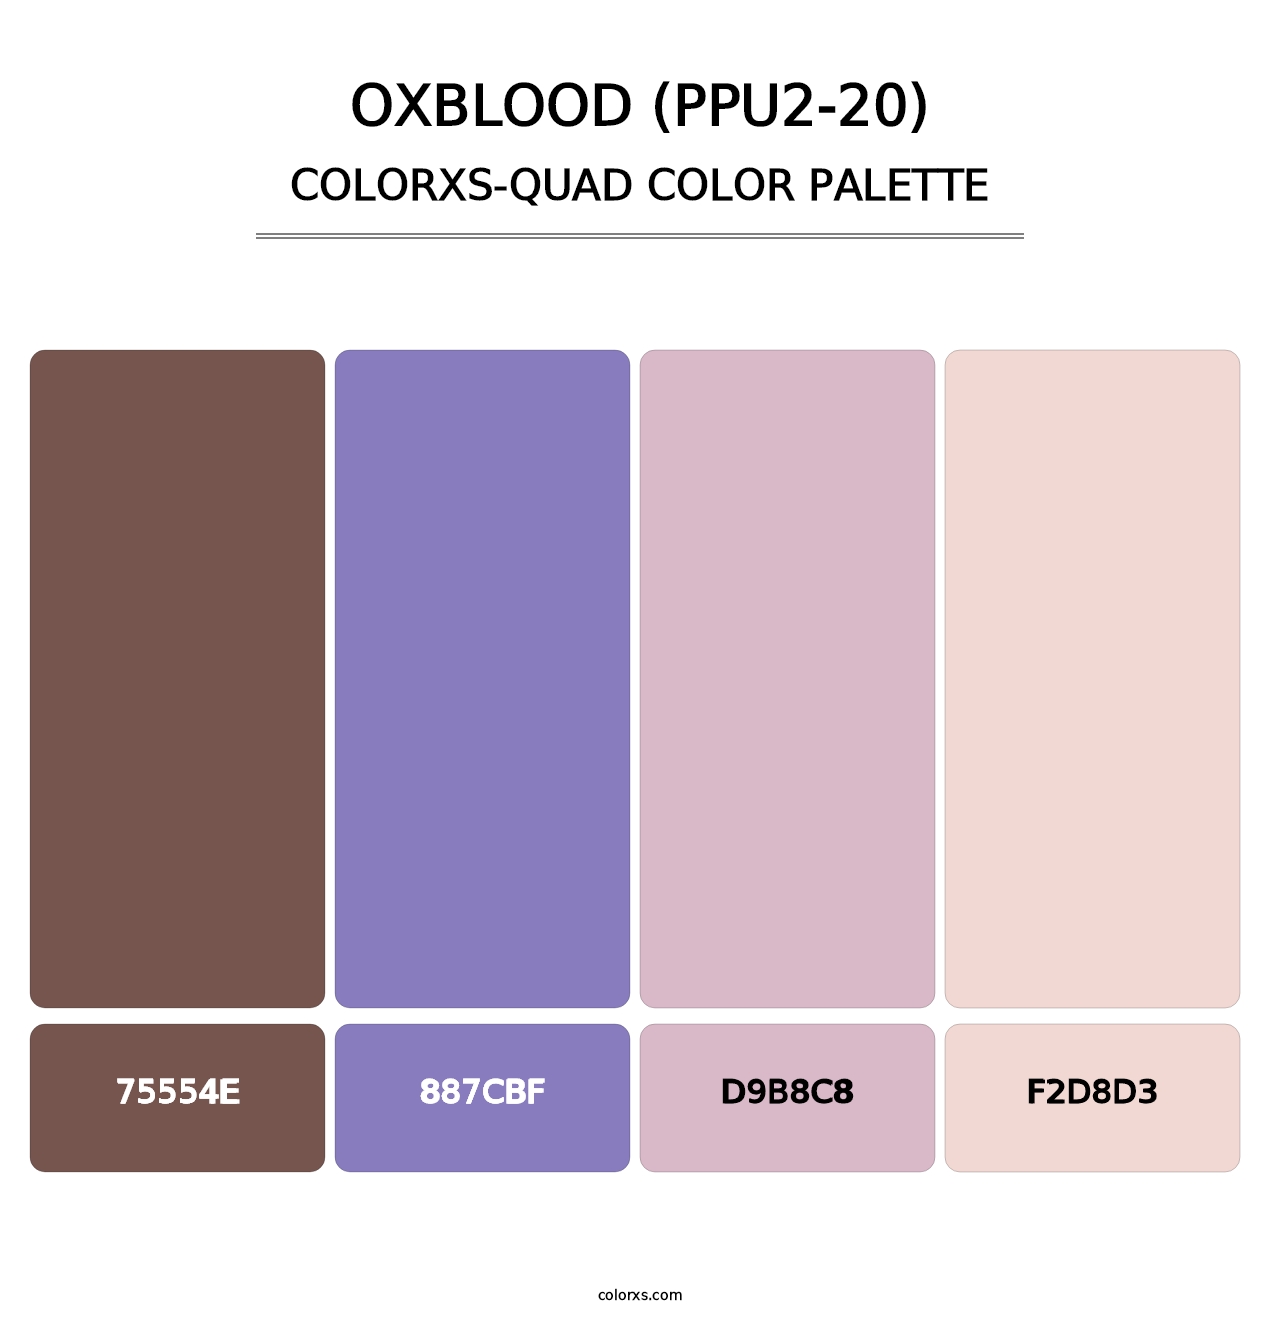 Oxblood (PPU2-20) - Colorxs Quad Palette